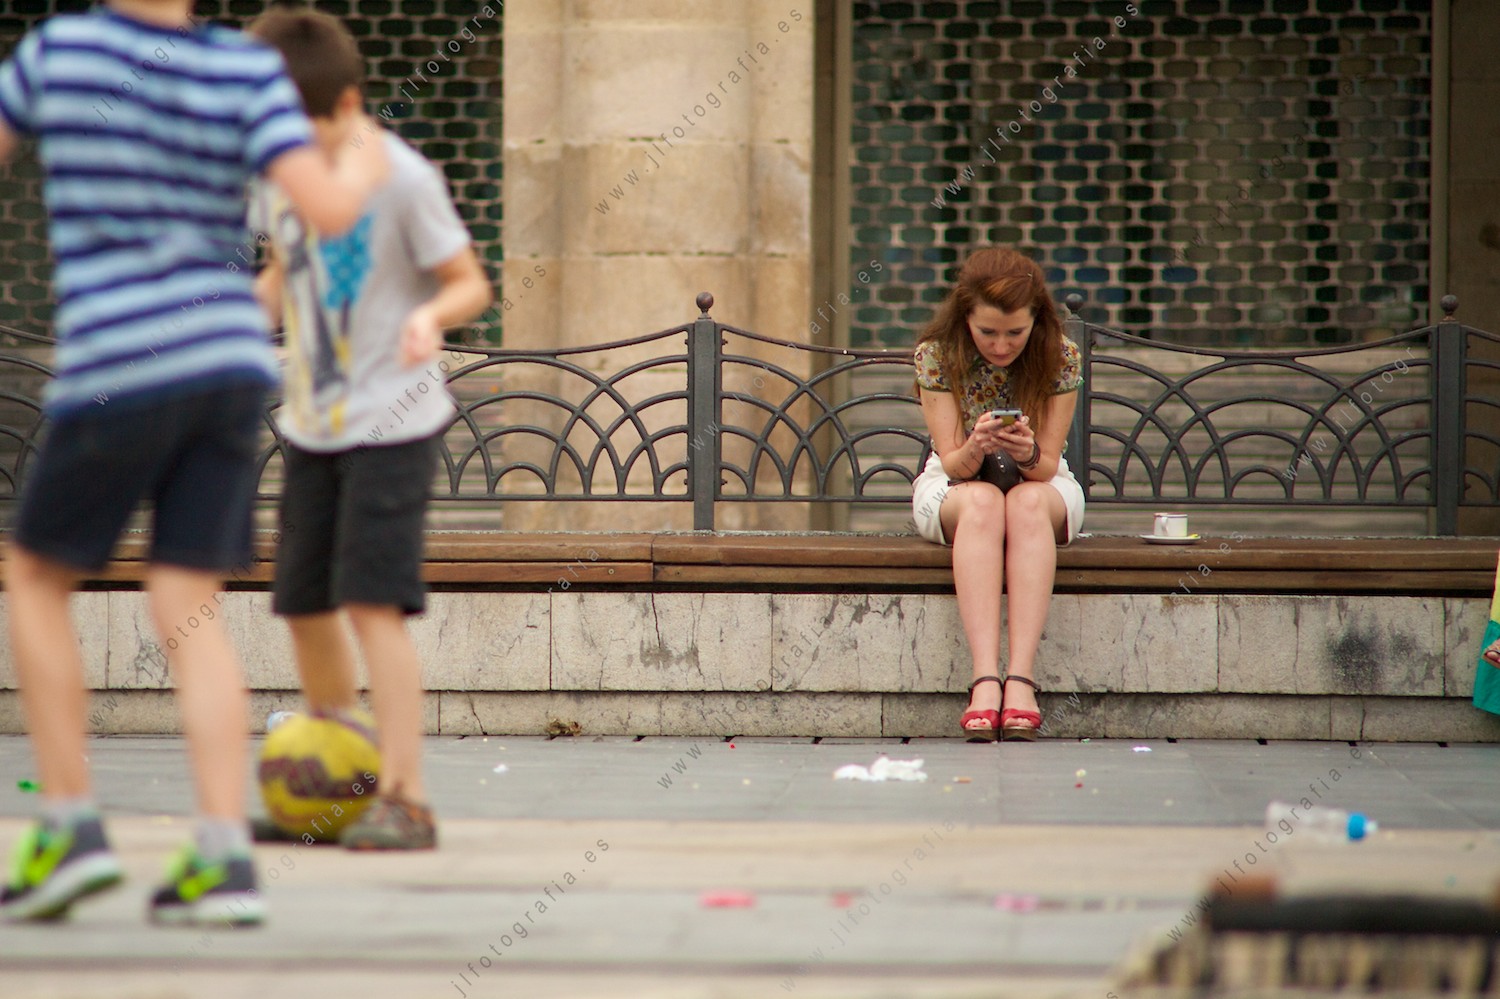 señorita sentada mirando el móvil en la Plaza Nueva de Bilbao